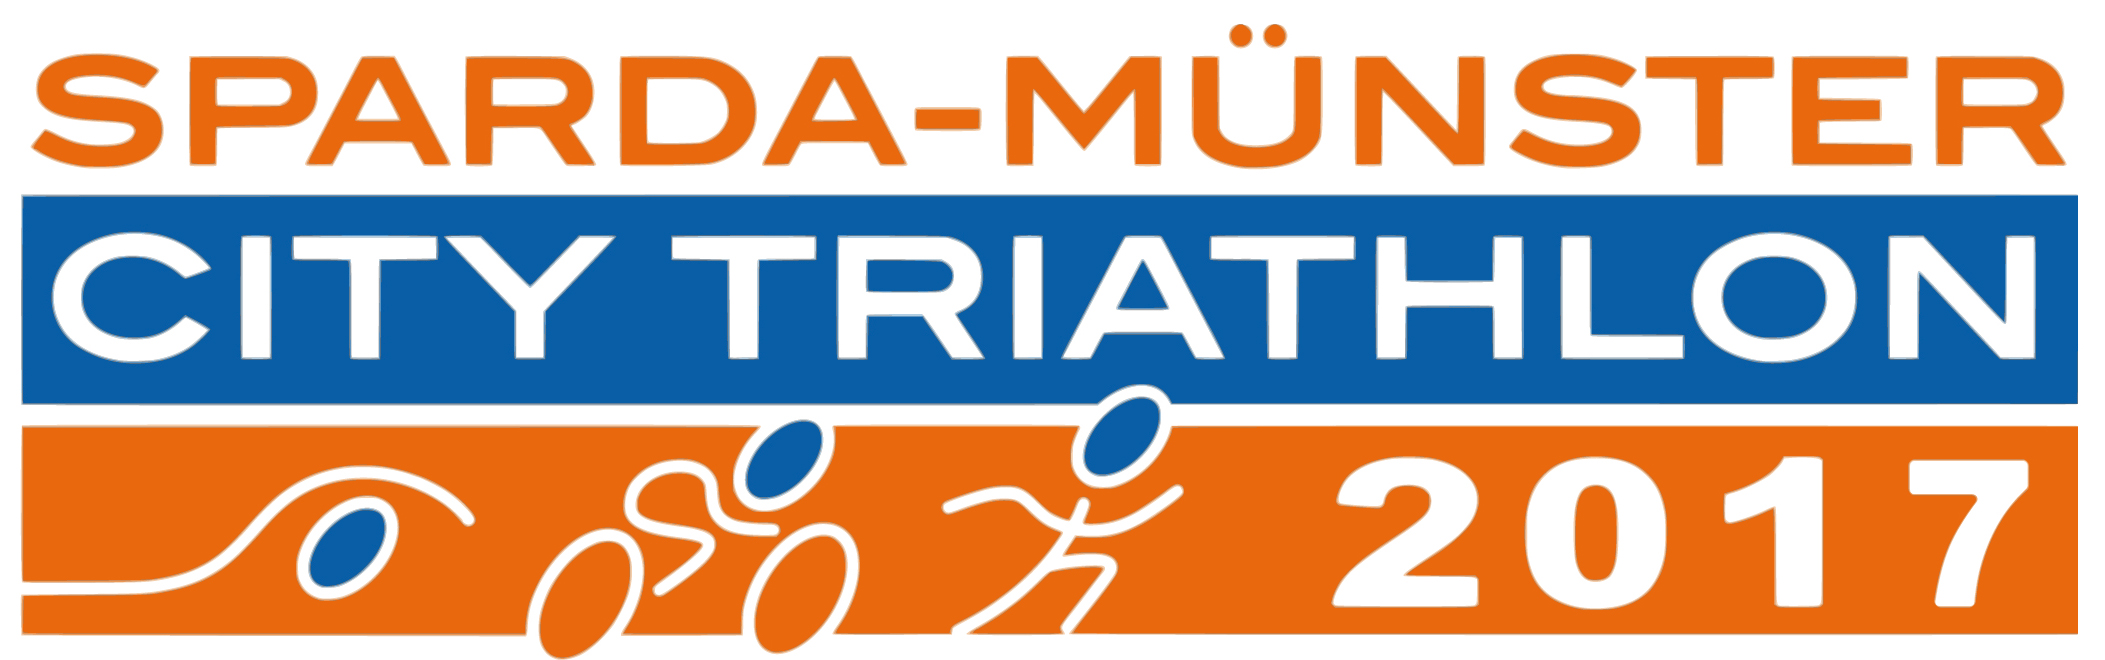 Sparda Münster City Triathlon 2017 fast ausgebucht-Warteliste offen